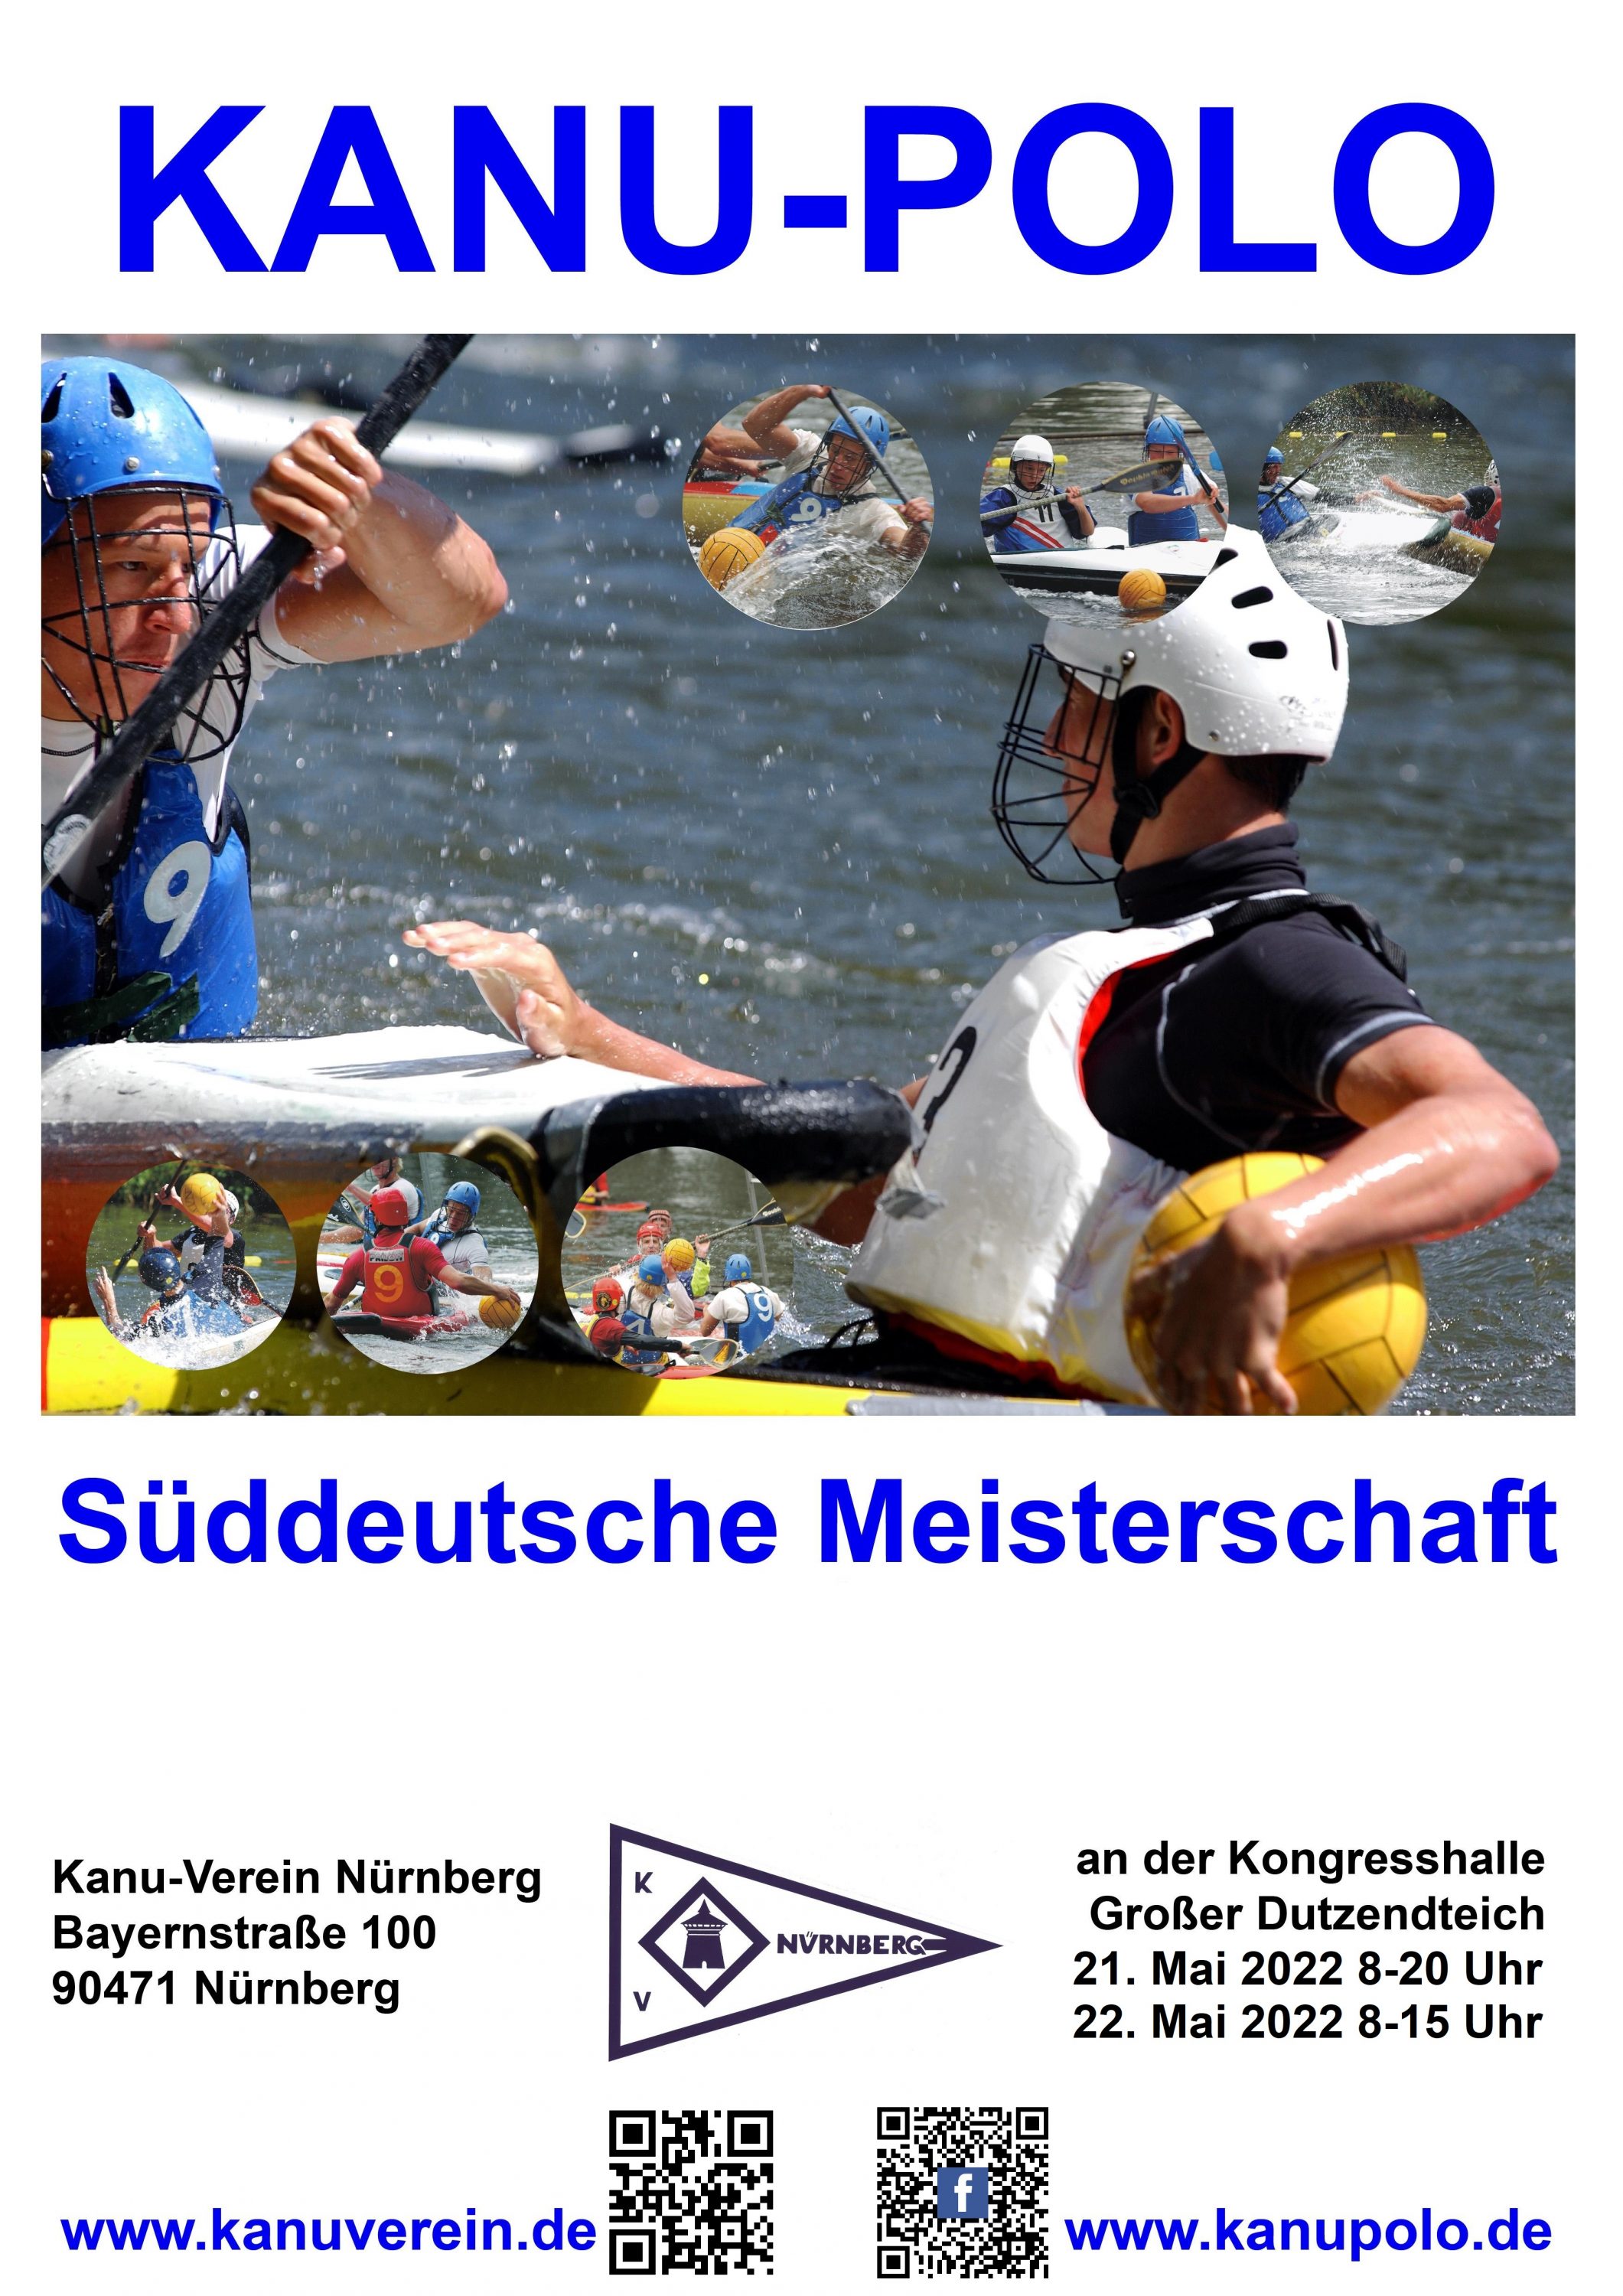 Süddeutsche Meisterschaft Kanu-Polo 2022